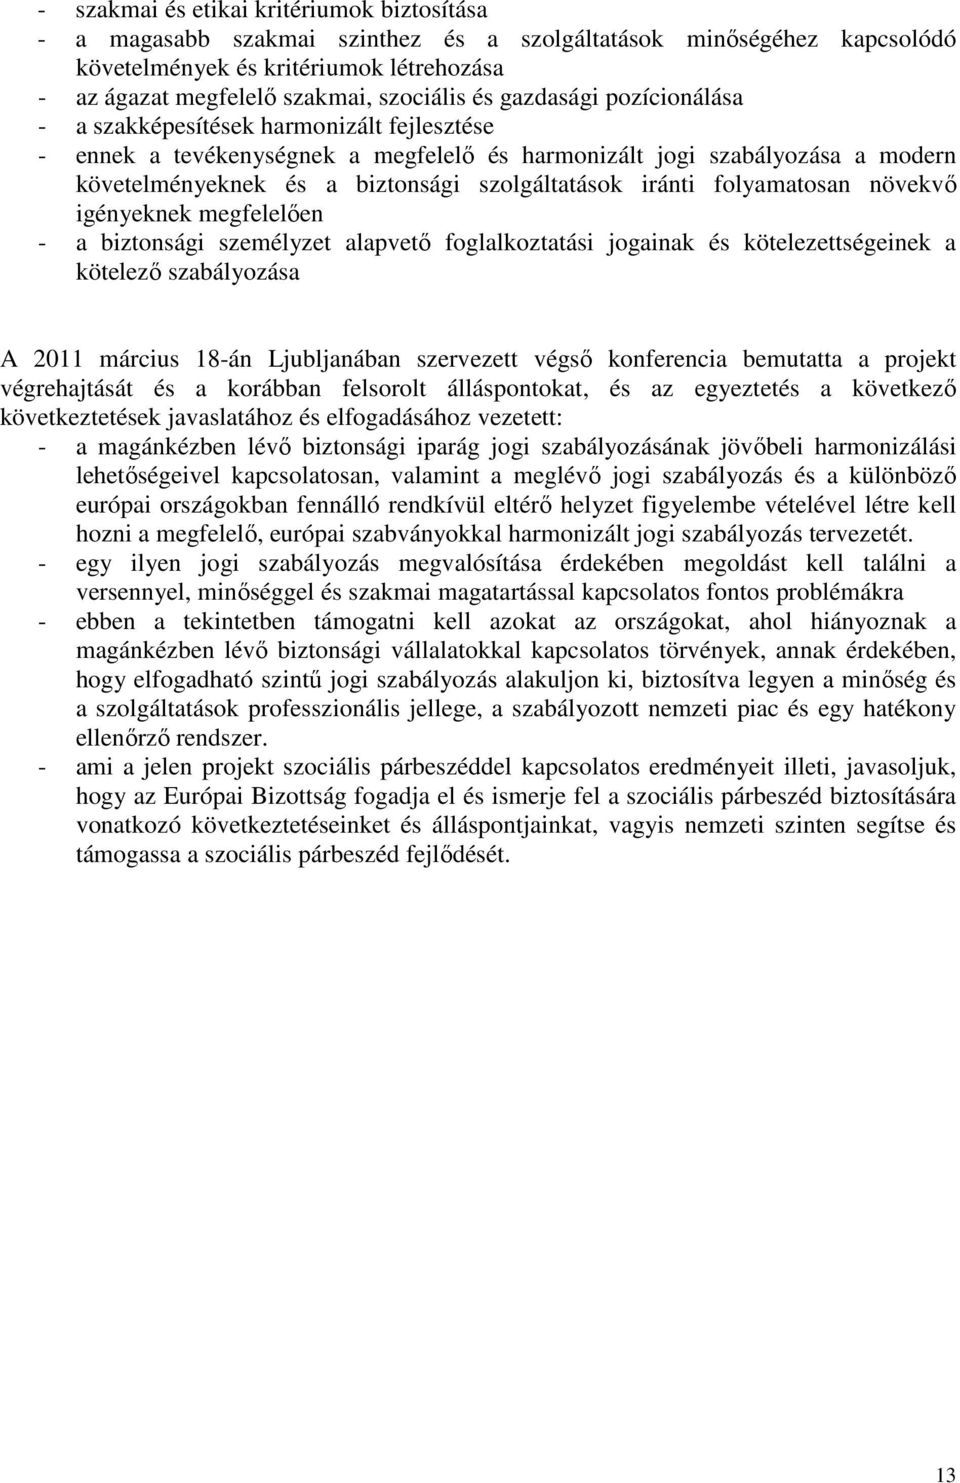 iránti folyamatosan növekvő igényeknek megfelelően - a biztonsági személyzet alapvető foglalkoztatási jogainak és kötelezettségeinek a kötelező szabályozása A 2011 március 18-án Ljubljanában